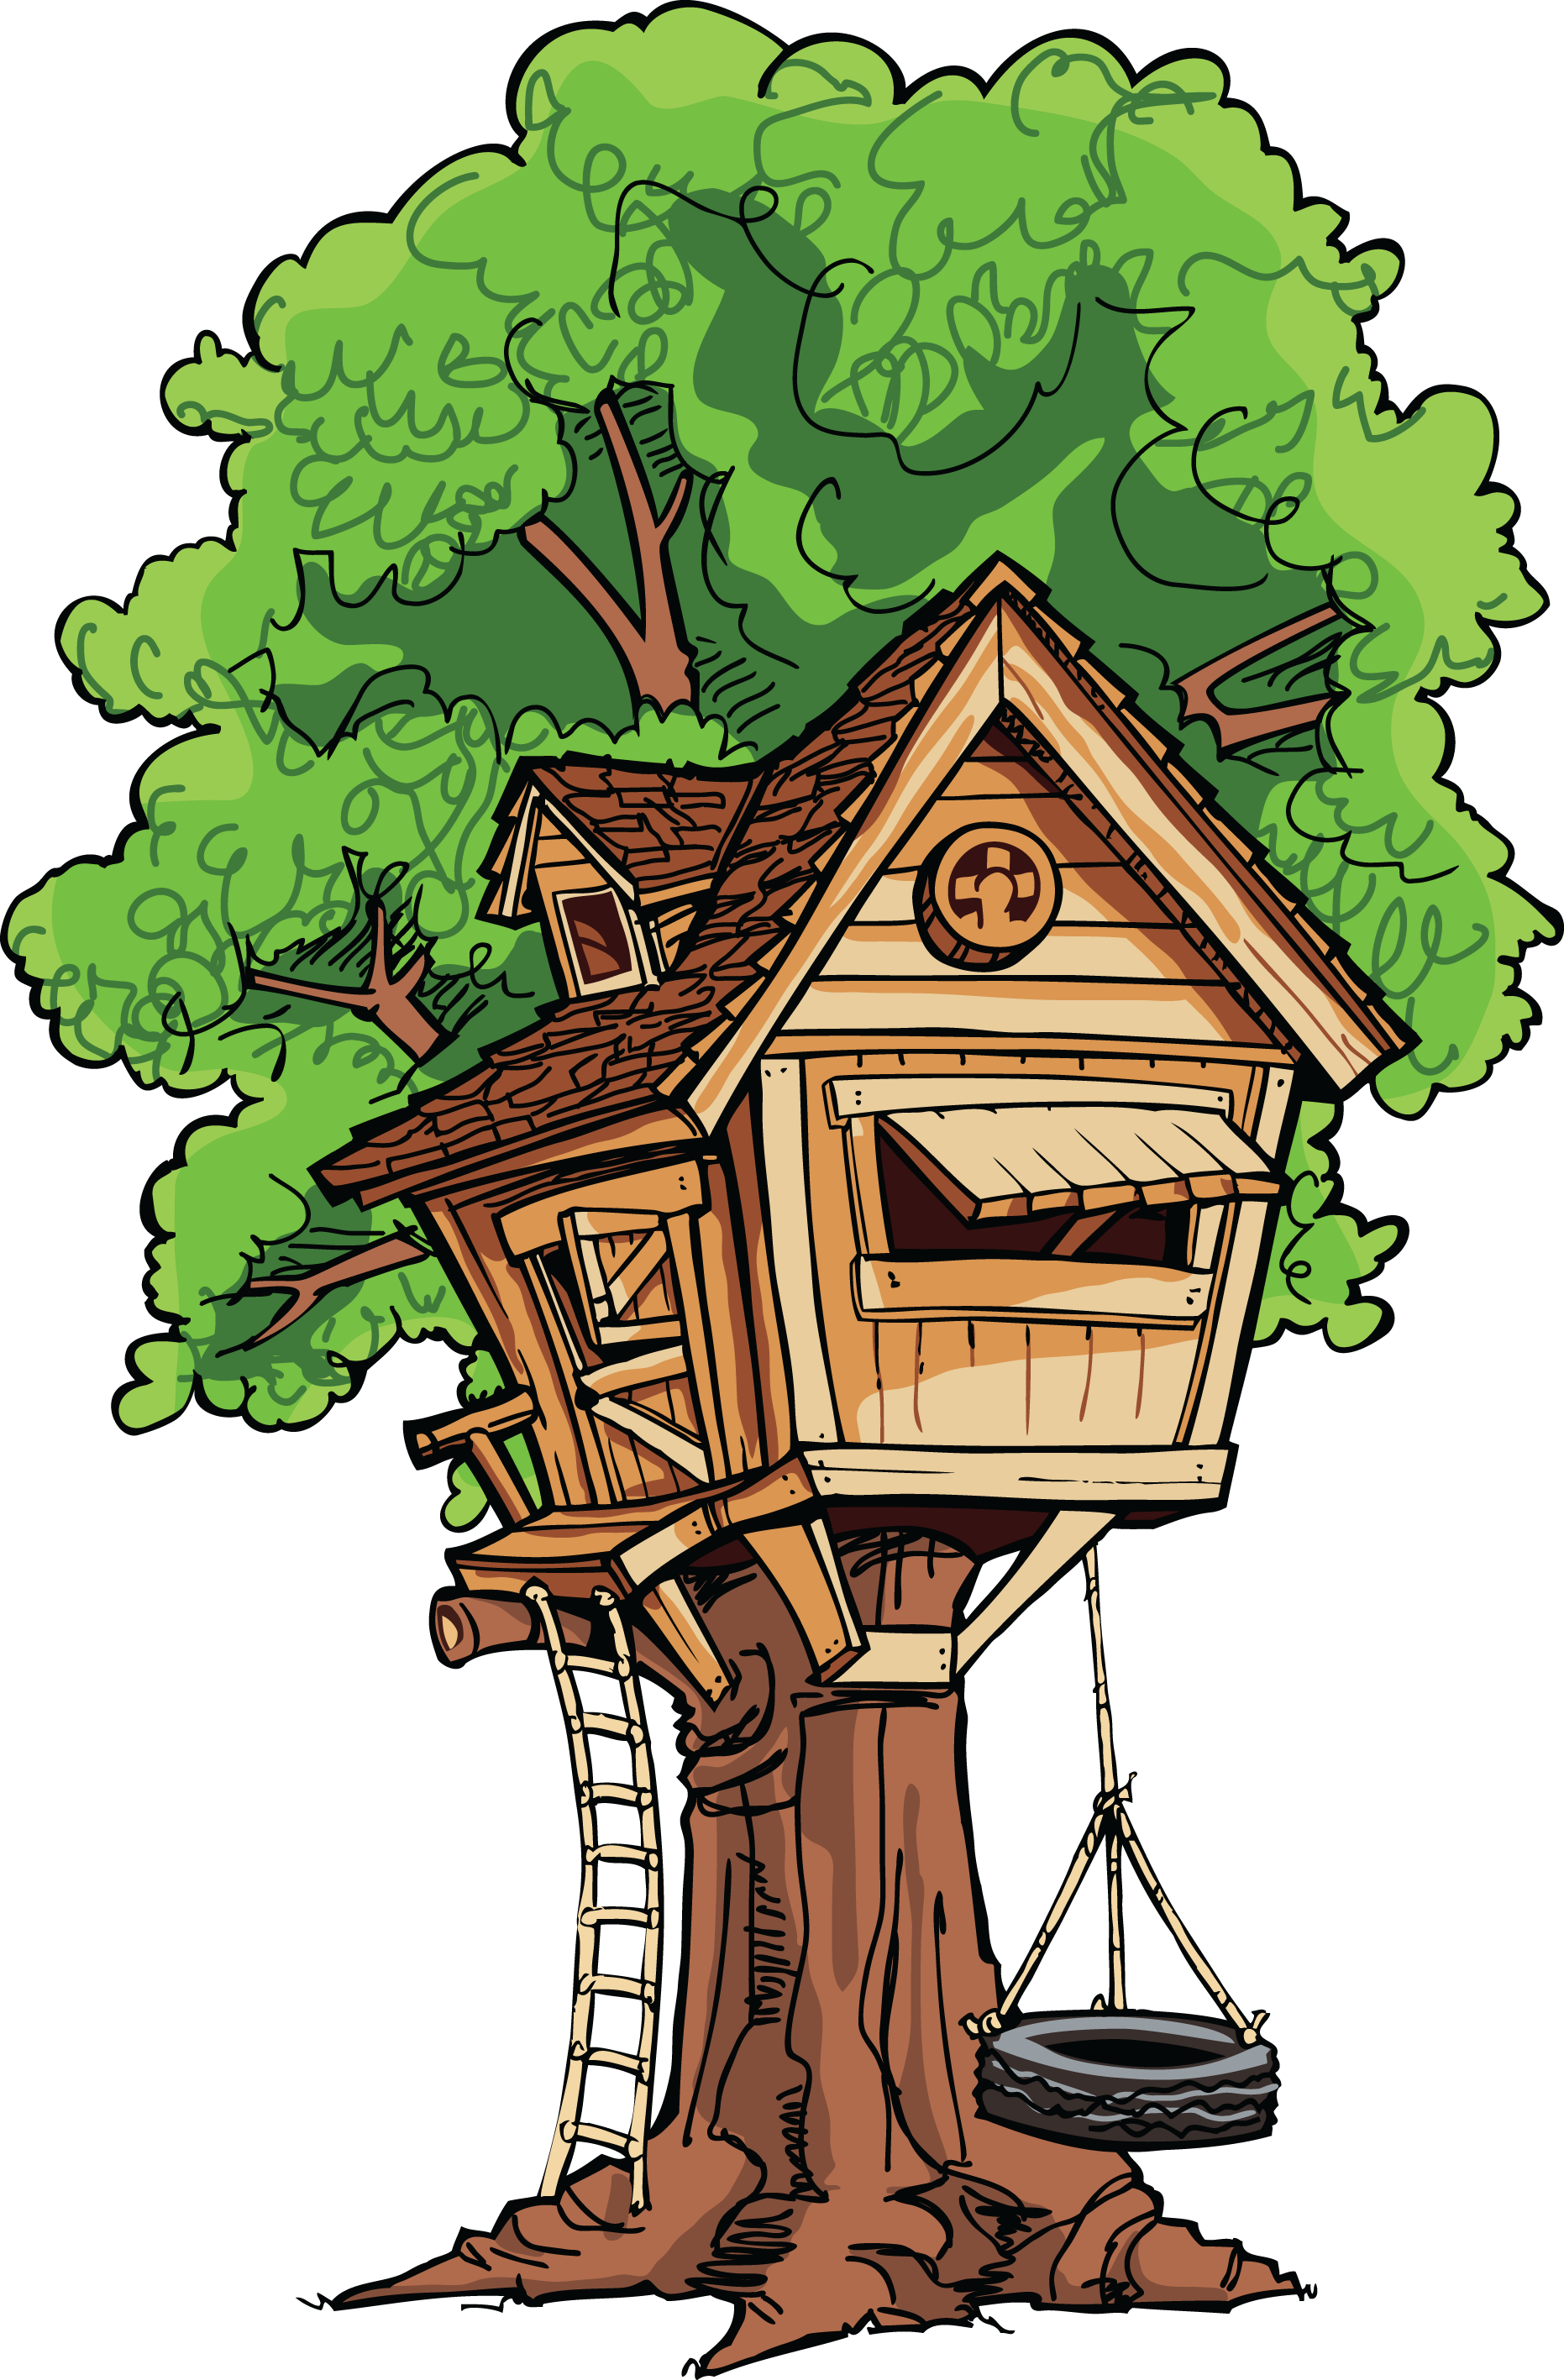 Tree house Royalty Free Stock